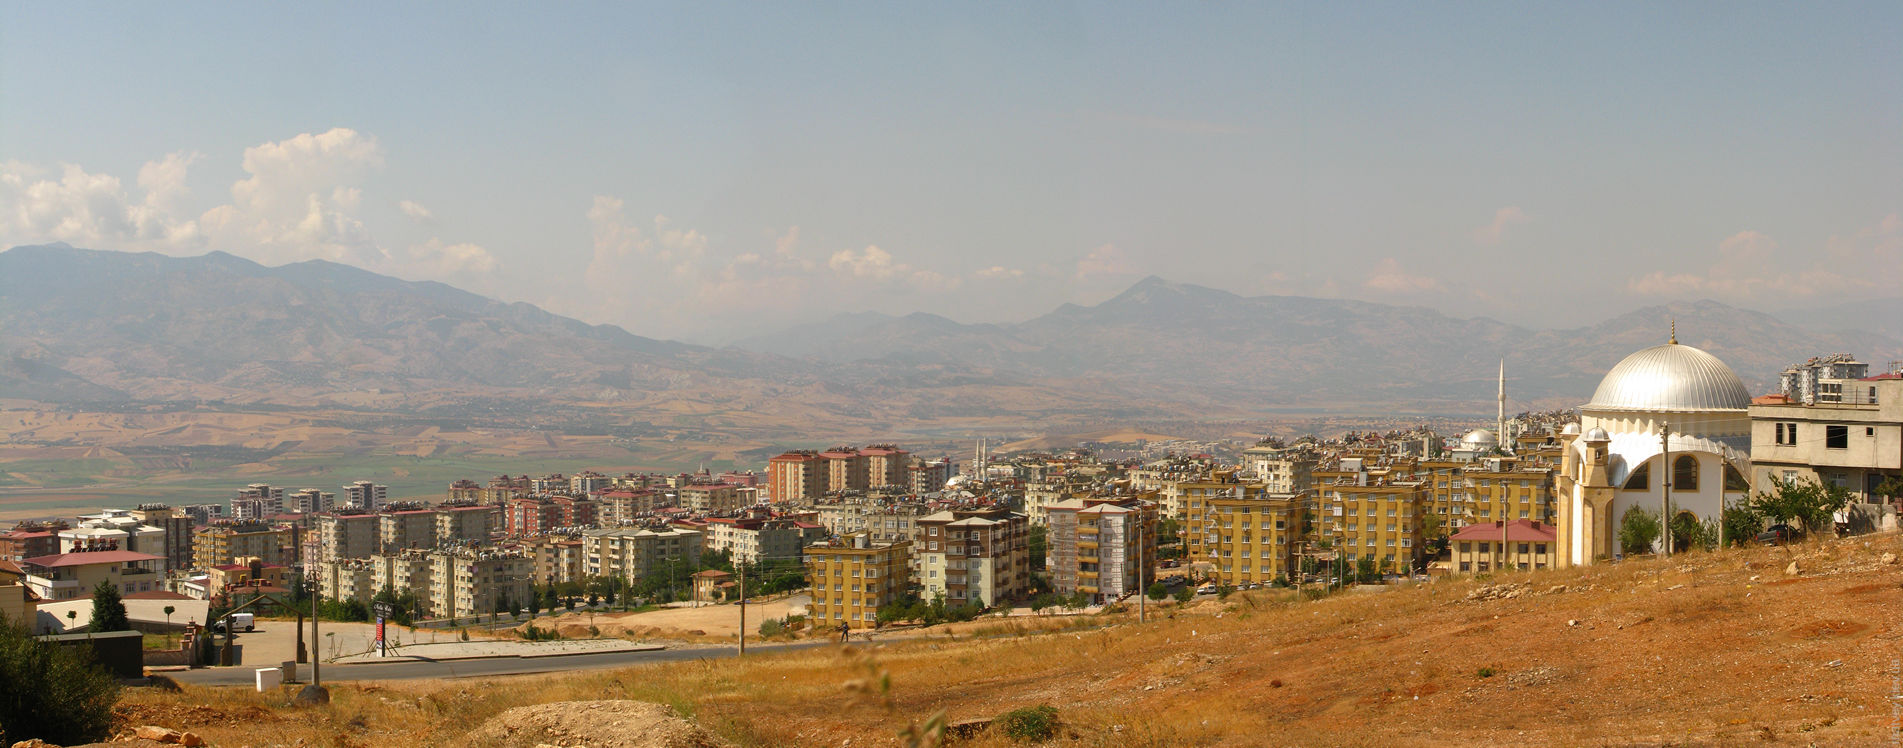 Панорама. Вид вниз на гірську долину з району Mimar Sinan. Кахраманмараш, Турция